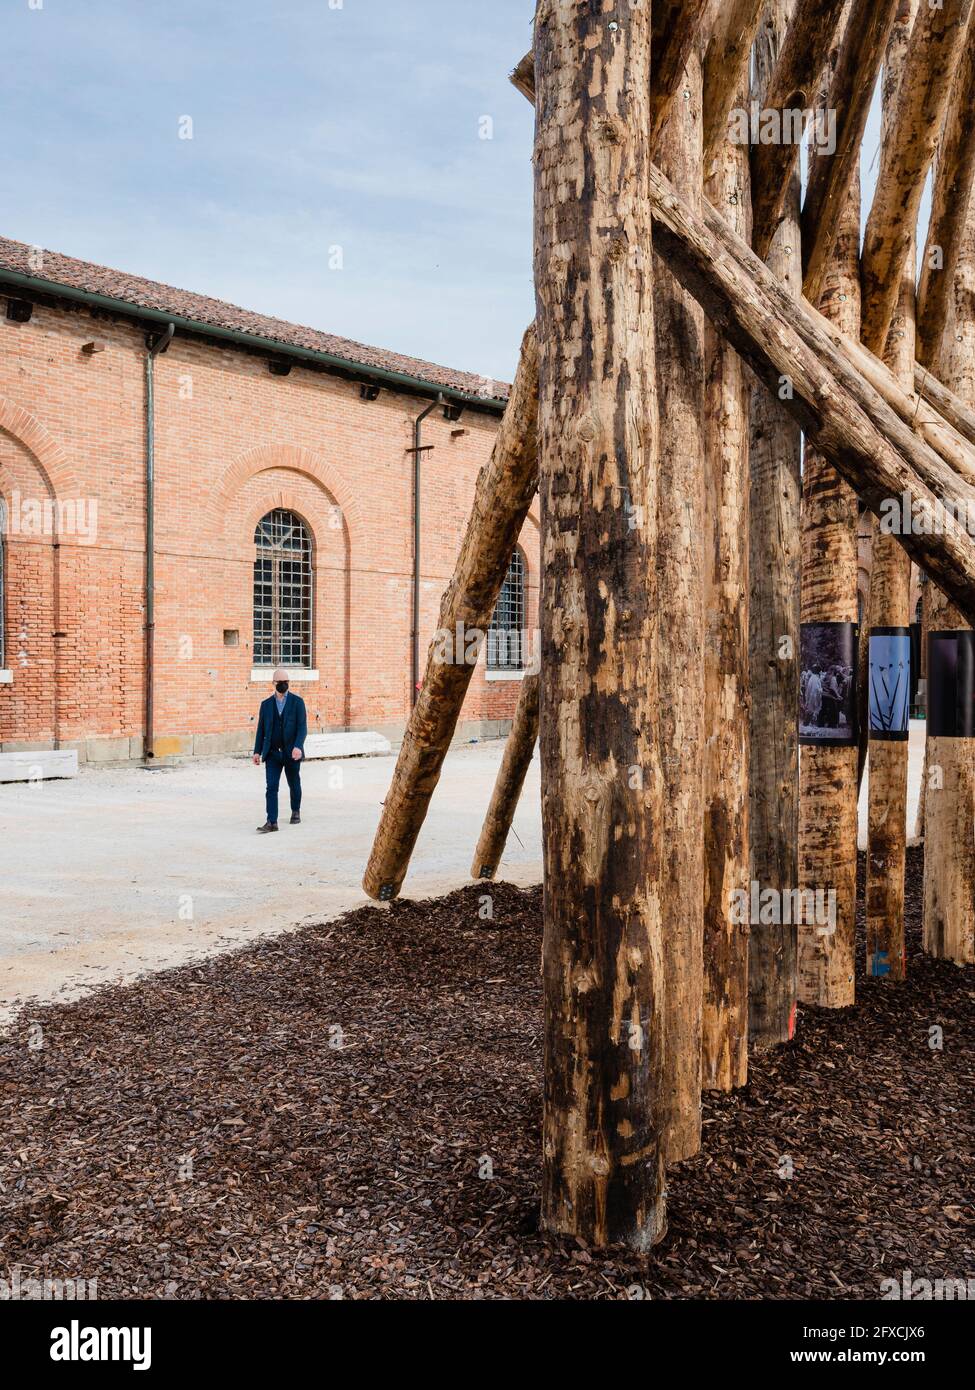 KUIˆNUIˆ di Elemental. 17° Biennale di architettura di Venezia, Venezia, Italia. Architetto: Vari, 2021. Foto Stock